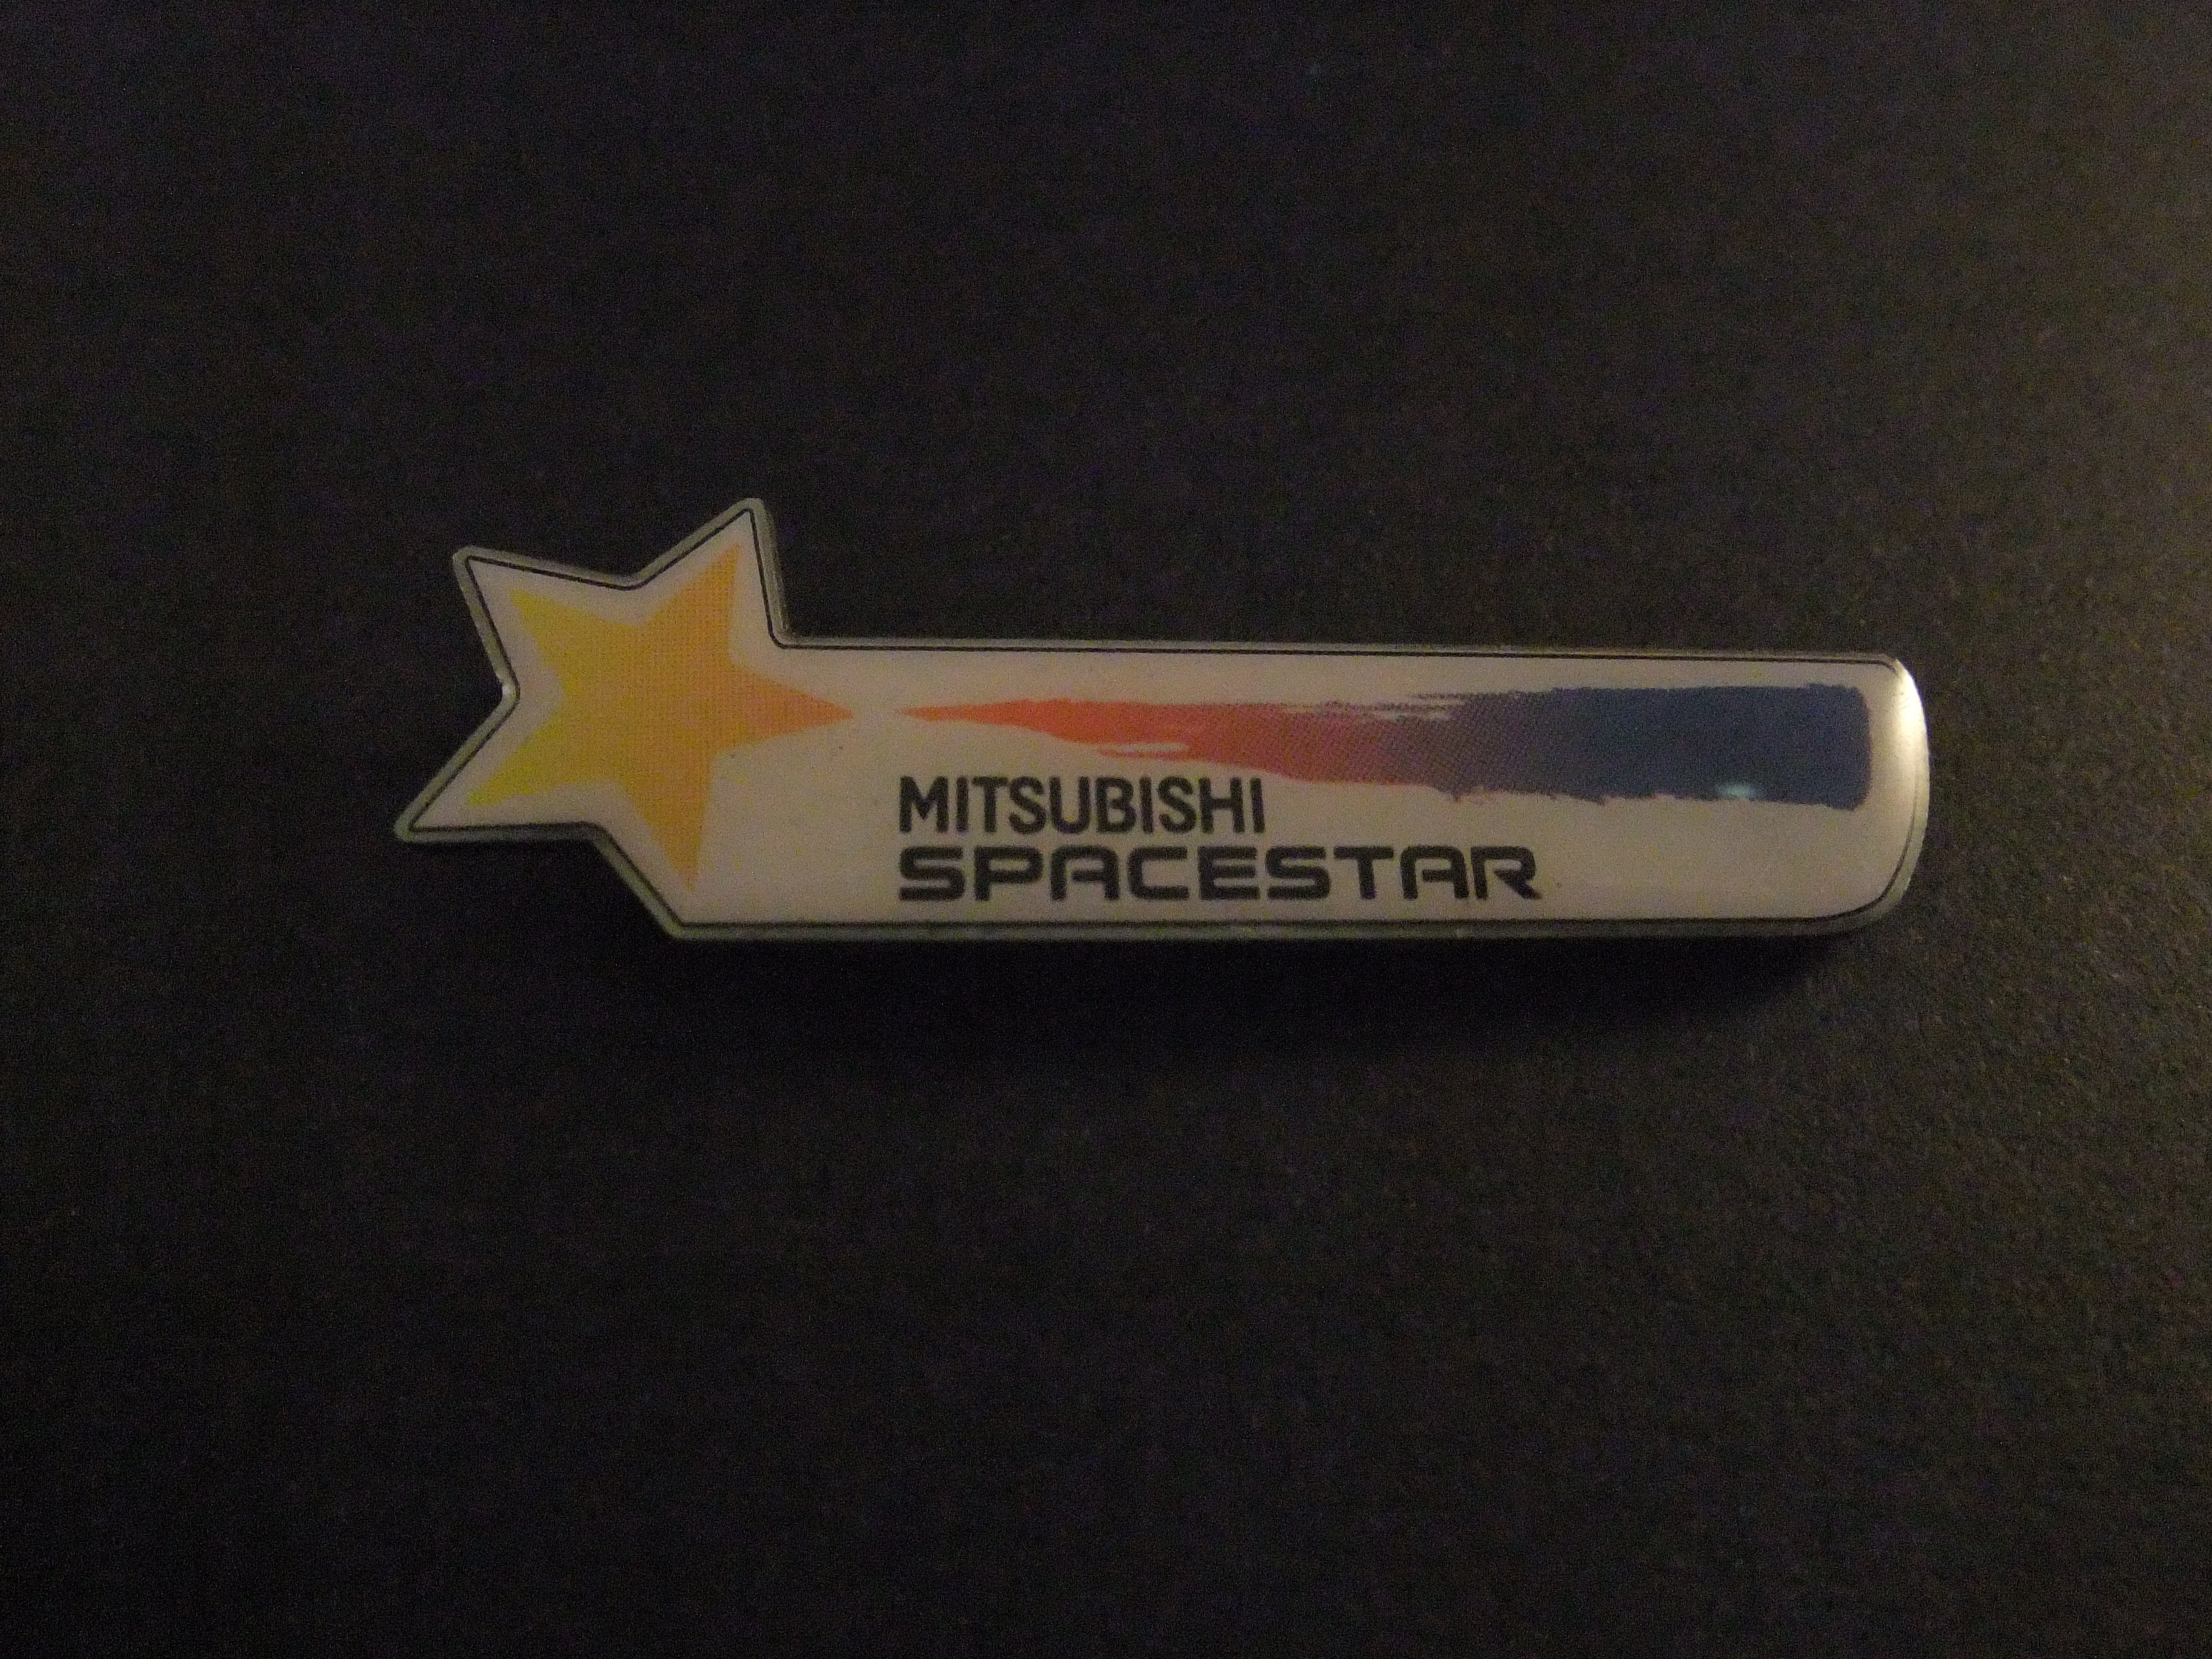 Mitsubishi Space Star, populaire MPV, logo